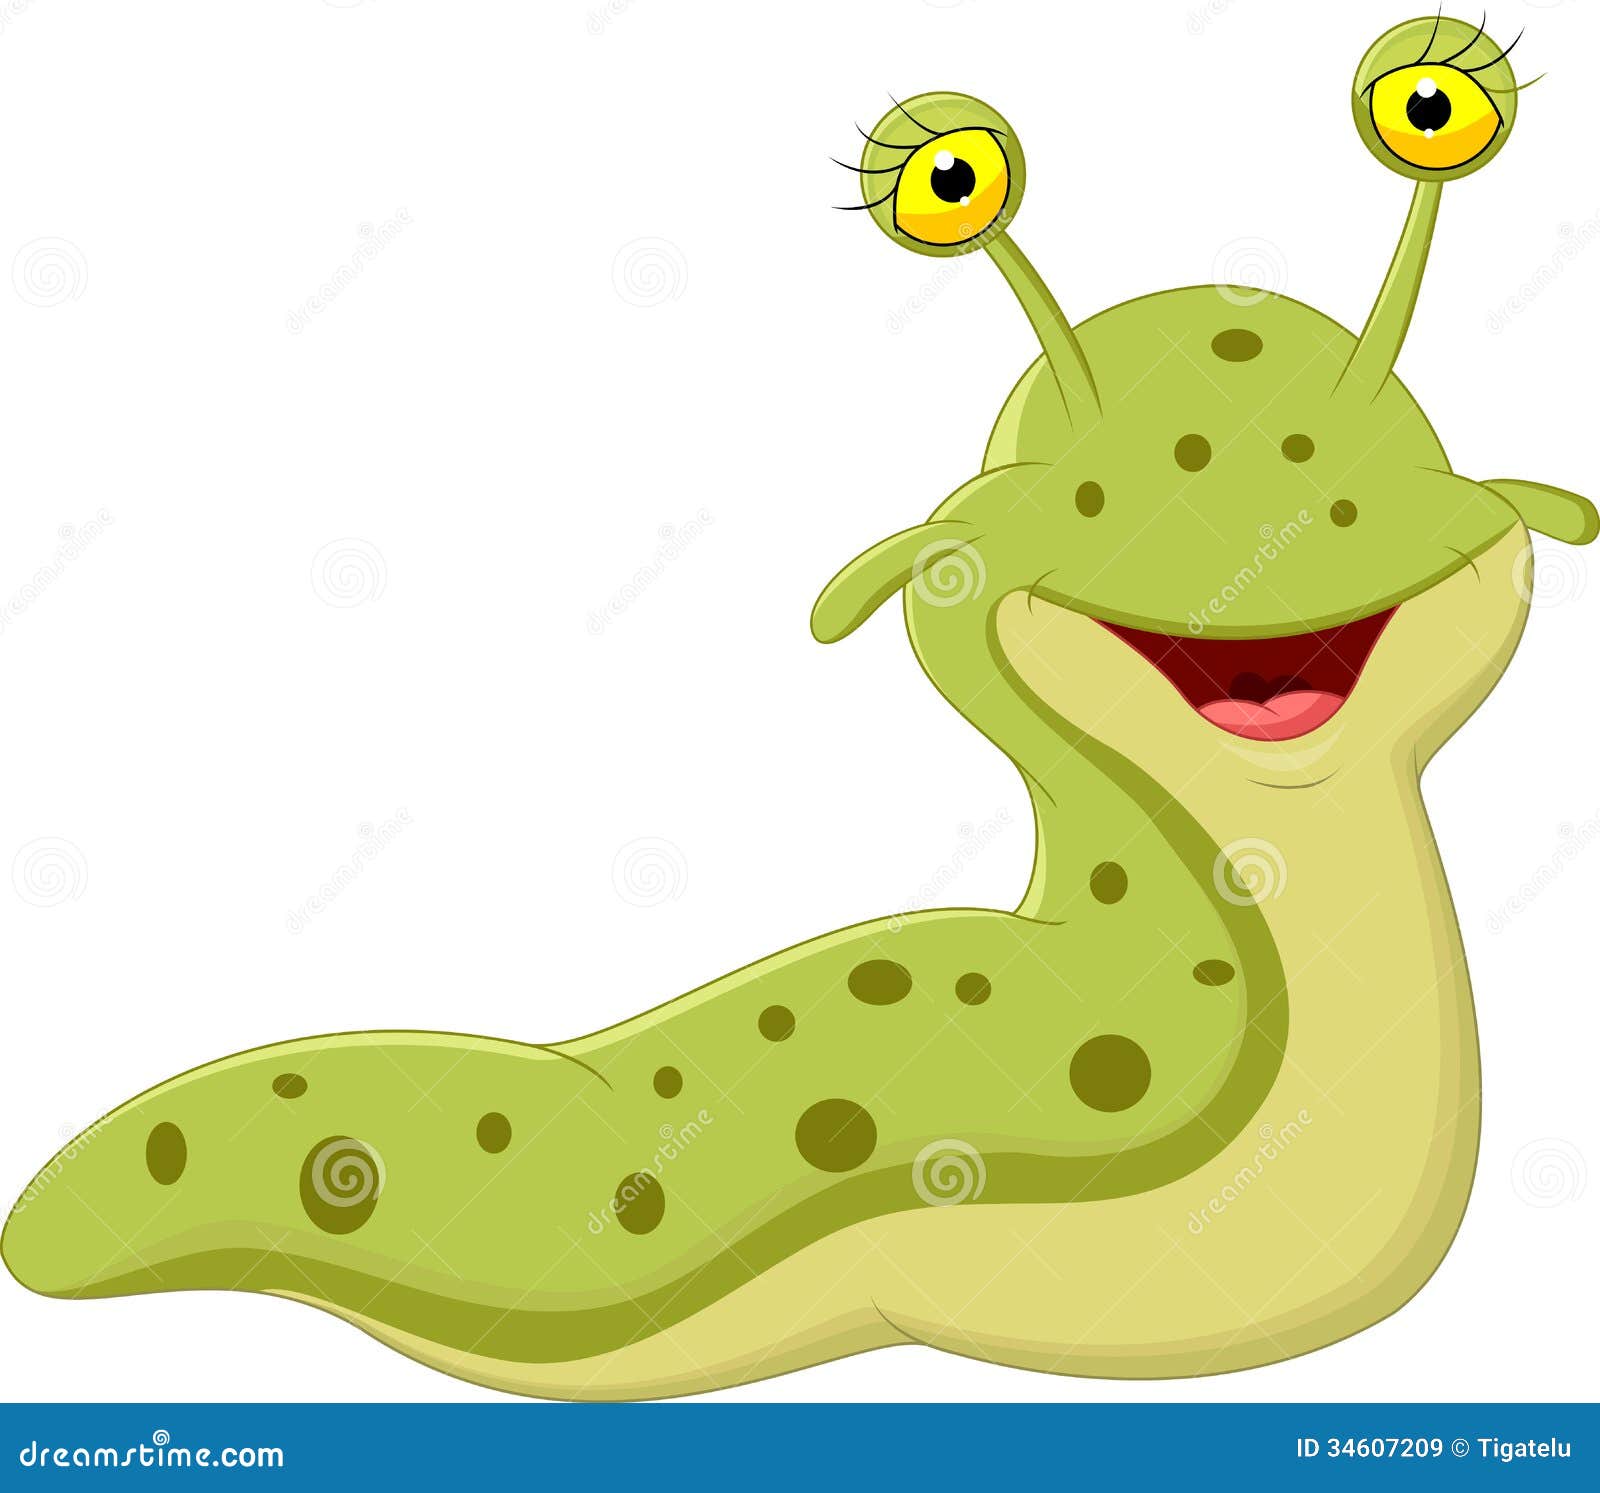 Slug Cartoon Stock Illustrations – 5,098 Slug Cartoon Stock Illustrations,  Vectors & Clipart - Dreamstime